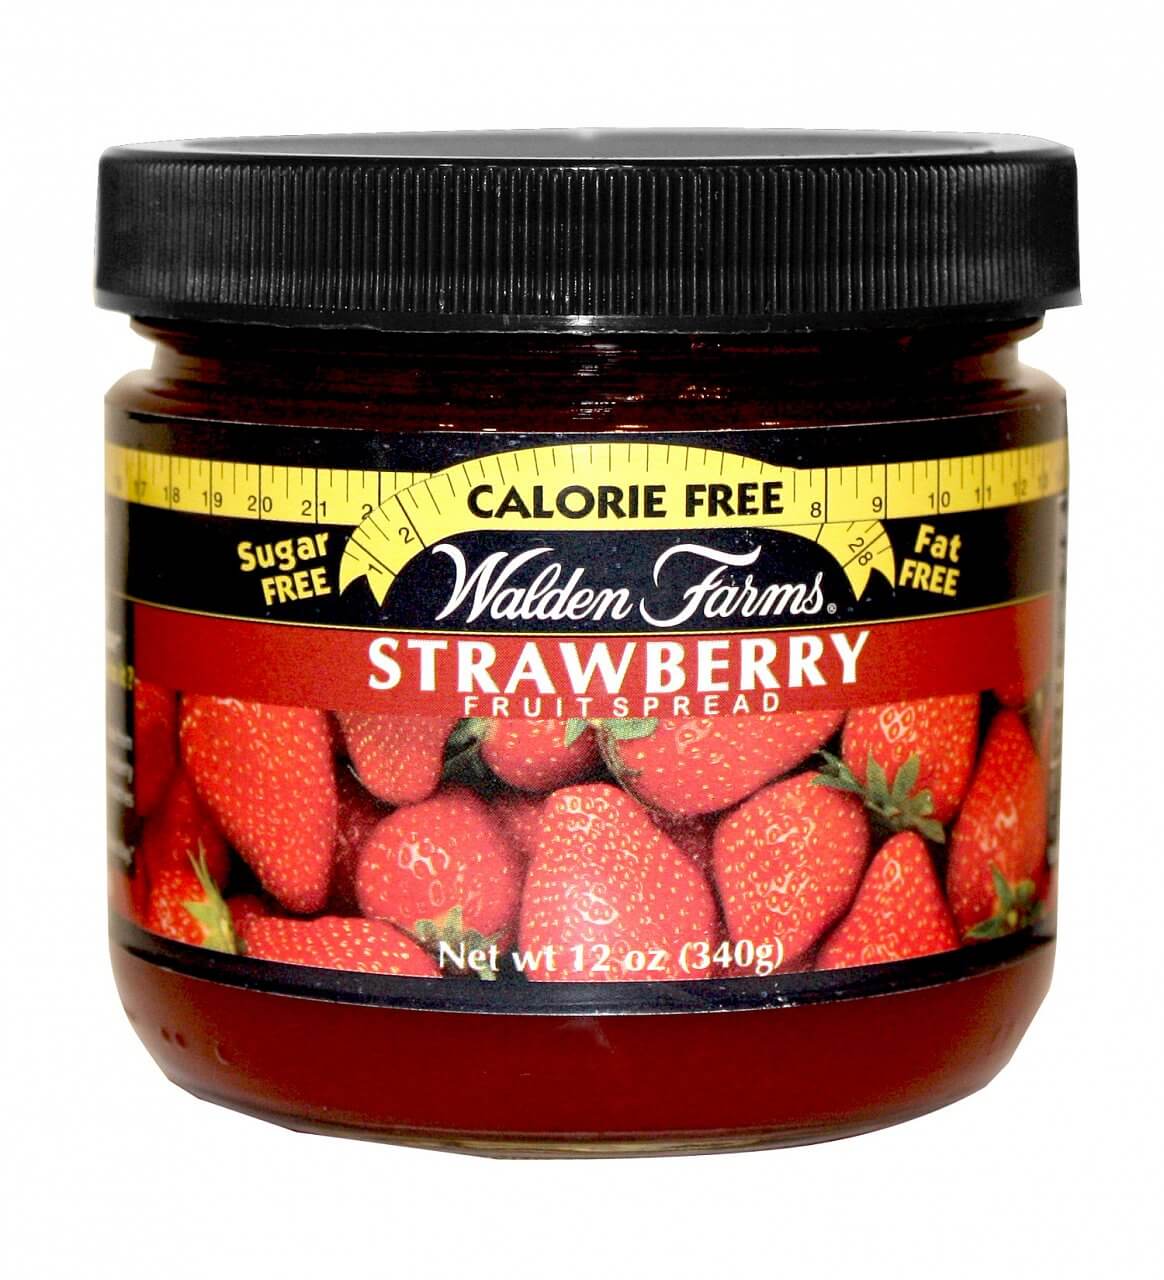 Zdravé potraviny Walden Farms Strawberry Fruit Spread, 340g